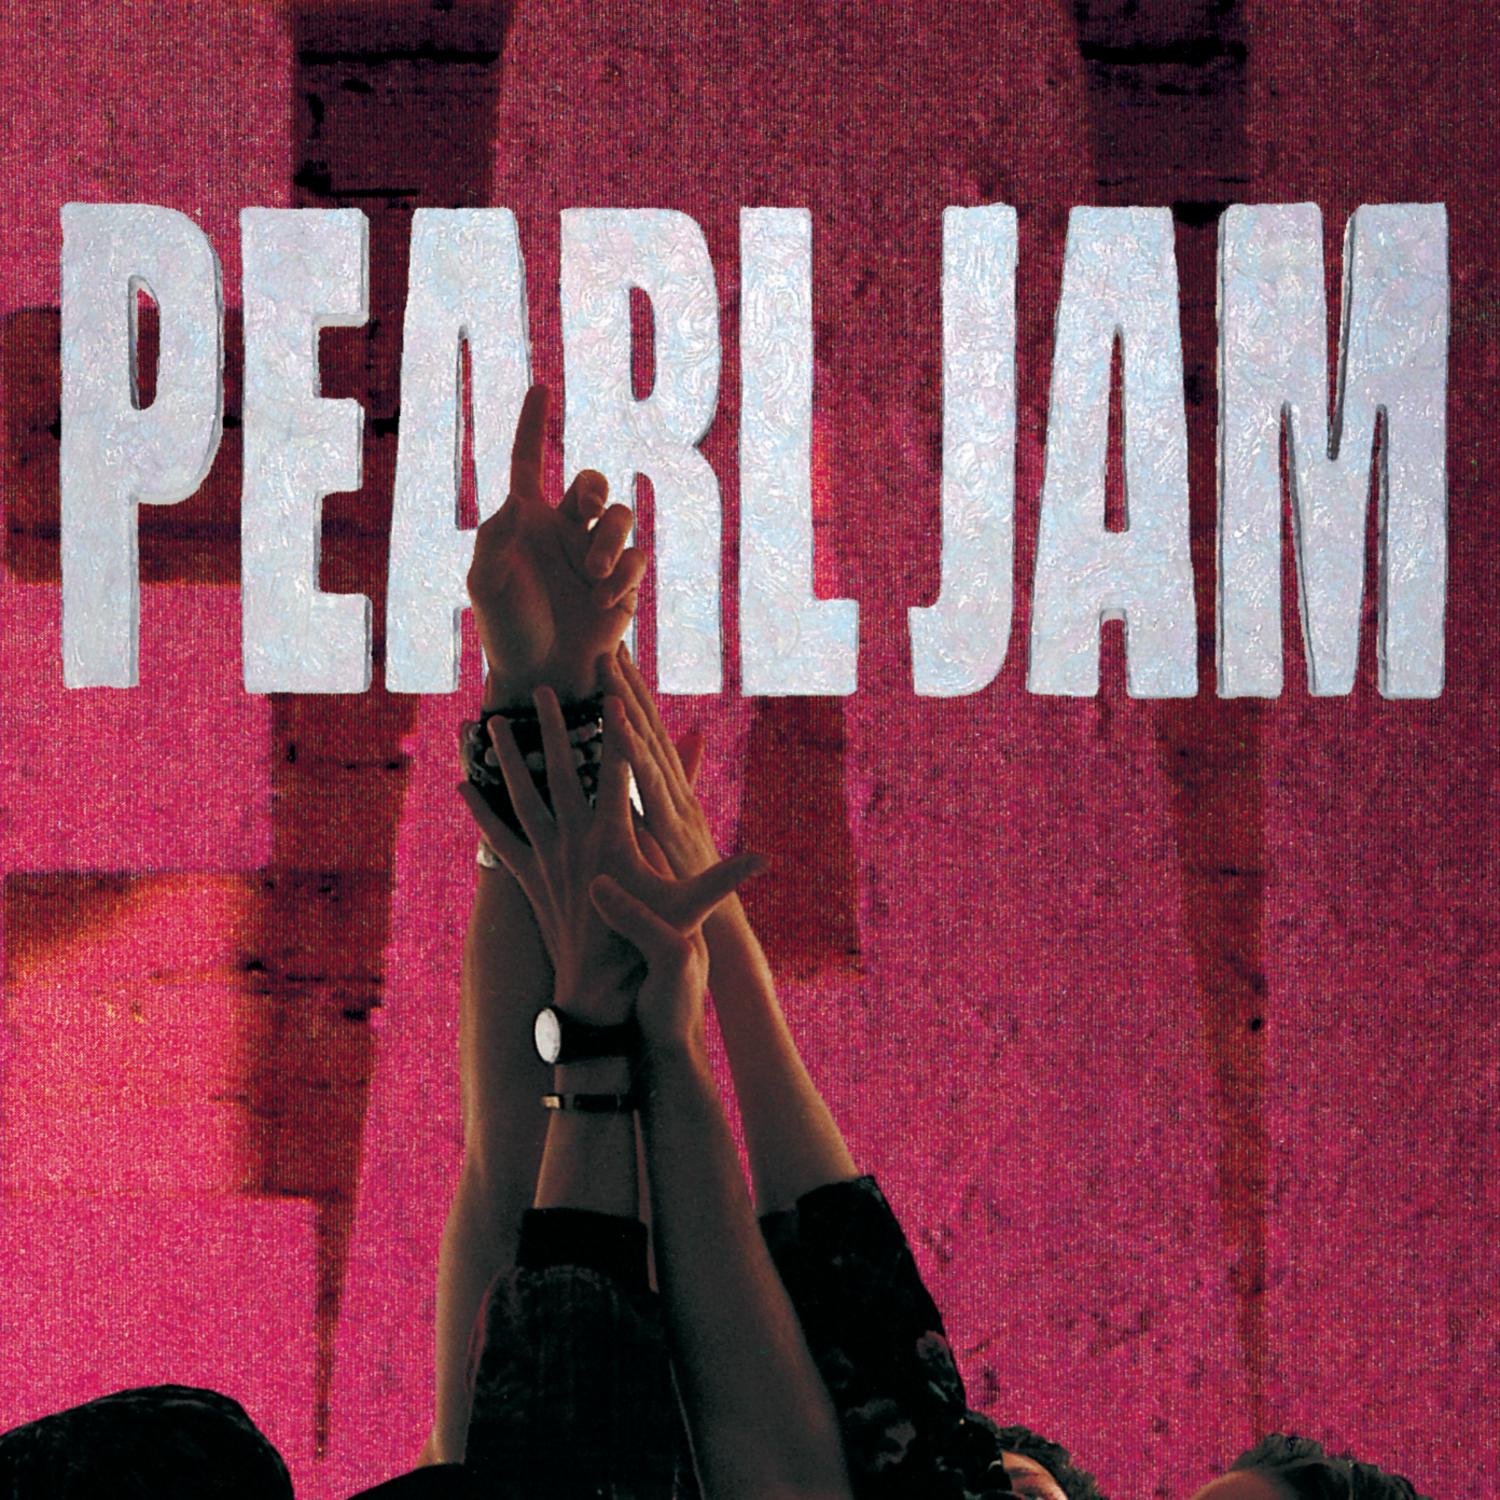 Capa do álbum Ten. Na foto, os cinco integrantes levantam um dos braços e permitem que as mãos se encontrem. Uma delas, a que está mais alta que as demais, está com o dedo indicador apontado para cima. Só é possível ver o braço dos integrantes na foto. O fundo da foto é rosa, e acima está escrito Pearl Jam com letras de fonte branca.